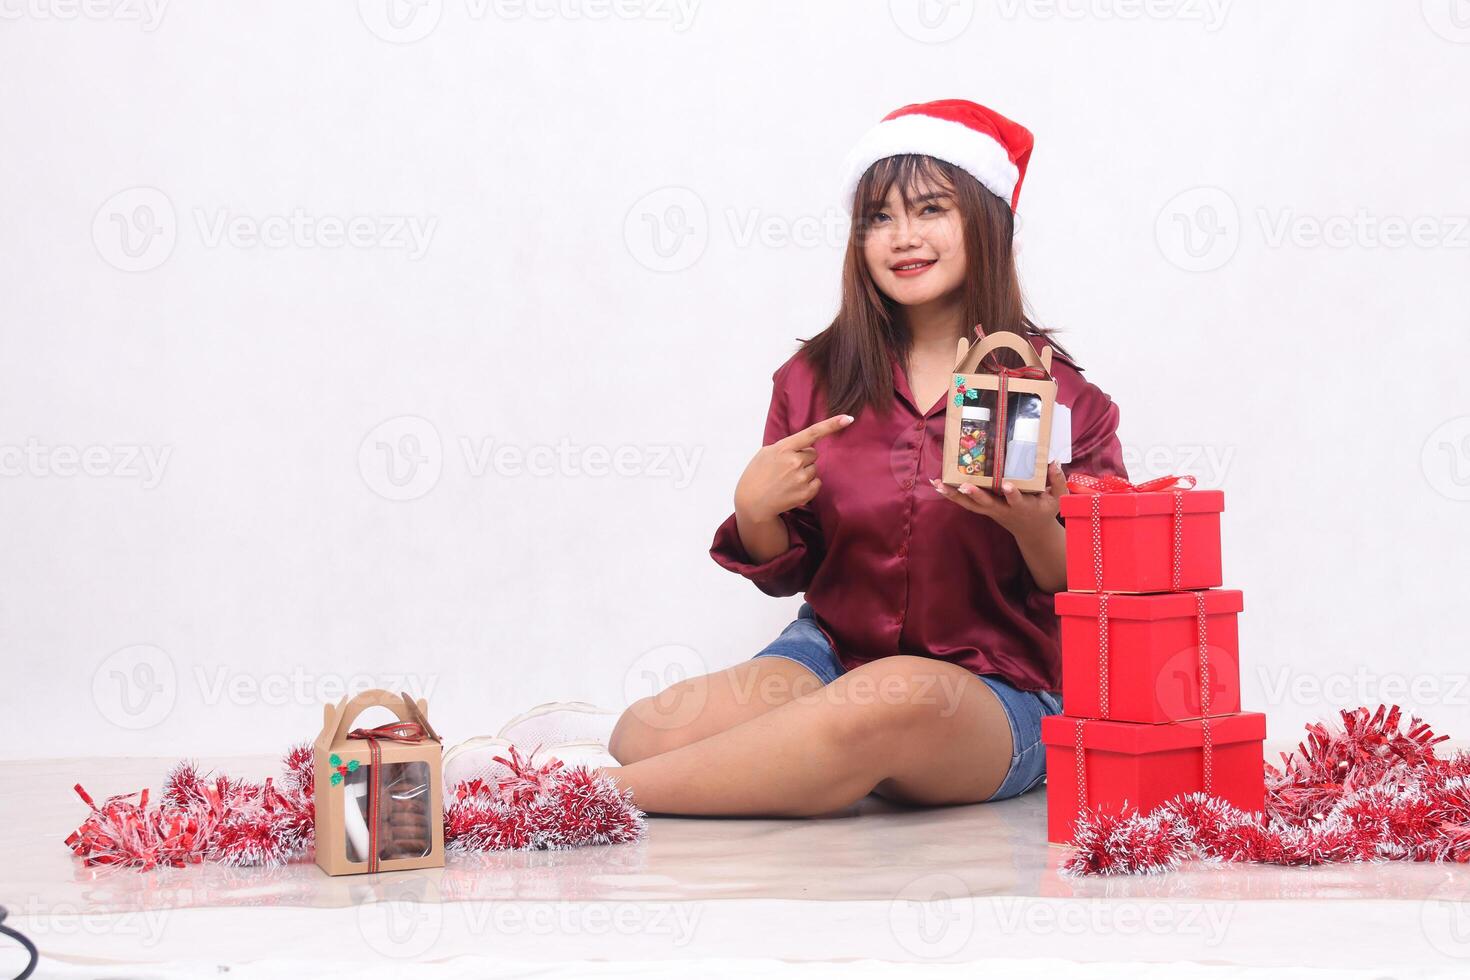 hermosa joven Sureste asiático niña sonriente señalando a cesto siguiente a 3 regalo cajas de cestas a Navidad vistiendo Papa Noel venda y rojo camisa en blanco antecedentes para promoción y publicidad foto